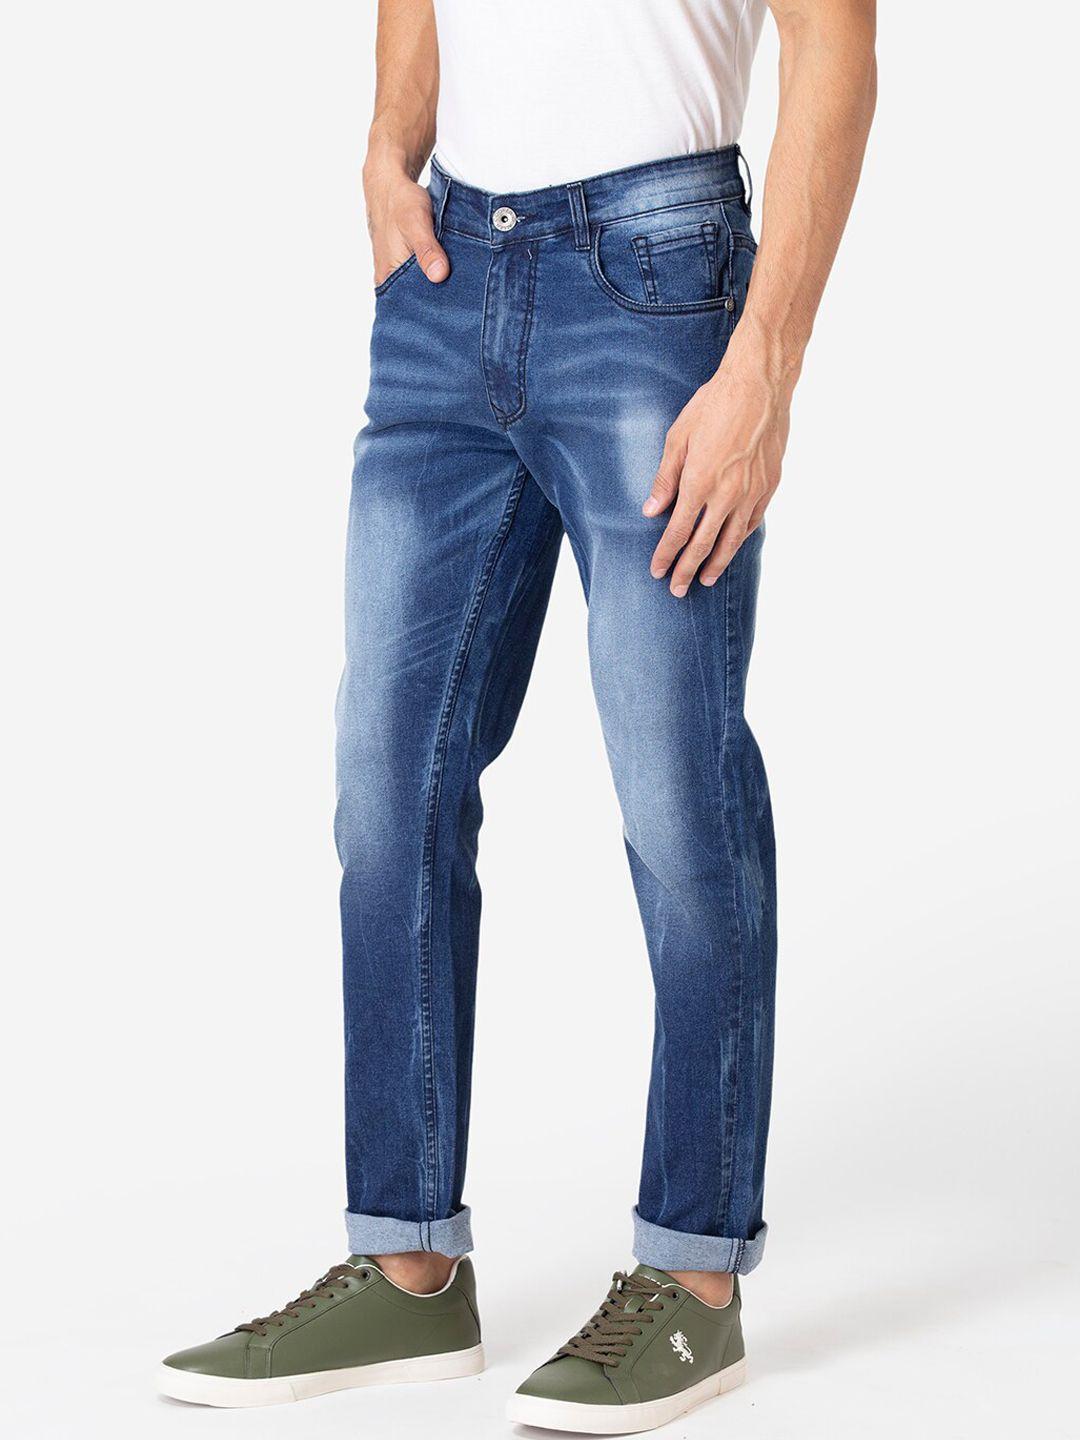 allen-cooper-men-navy-blue-slim-fit-heavy-fade-jeans